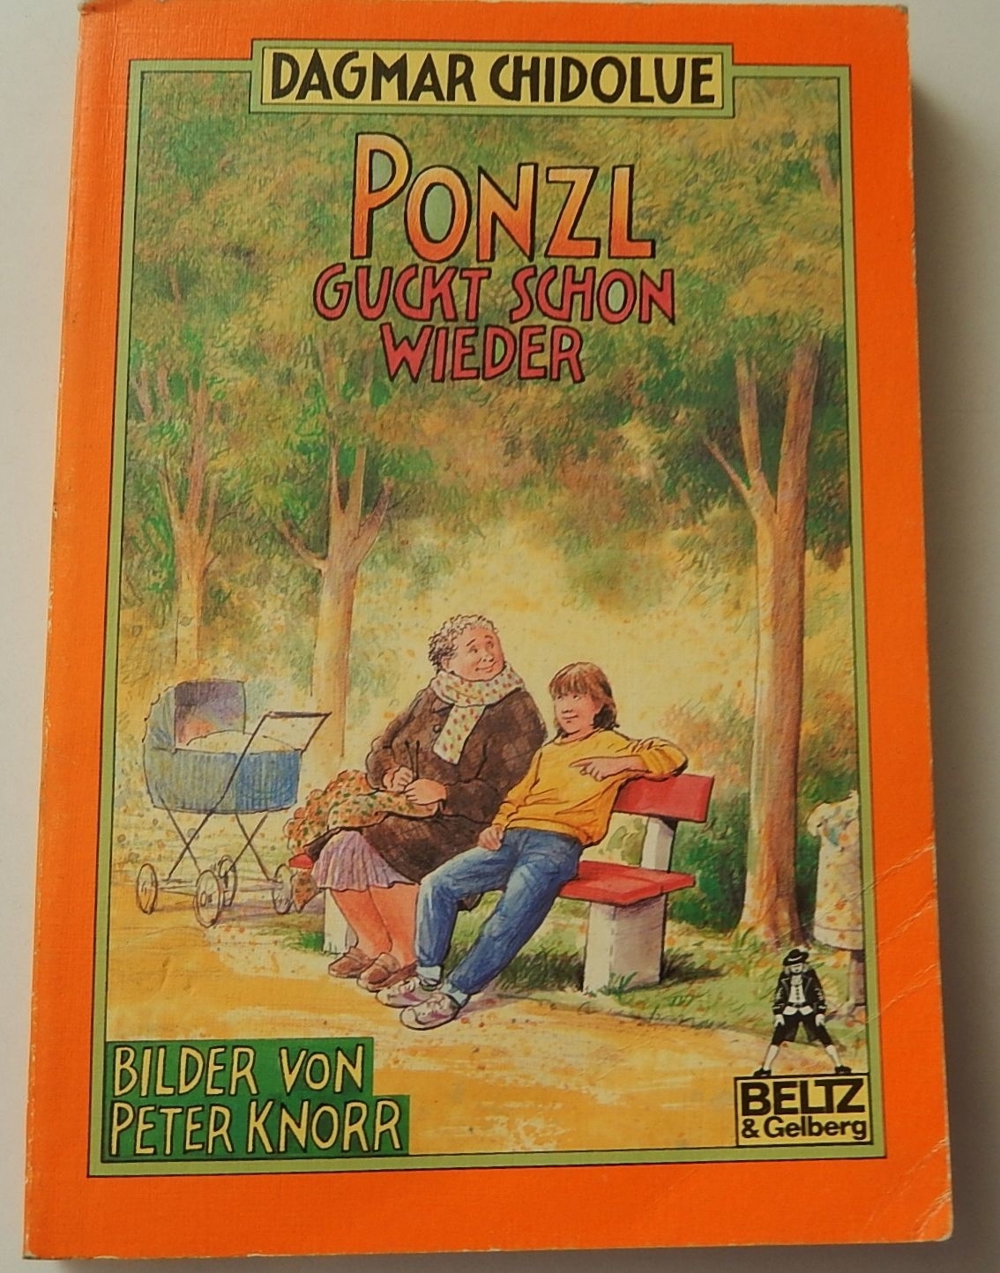 Ponzl guckt schon wieder / Dagmar Chidolue / ISBN 3 407 78128 8